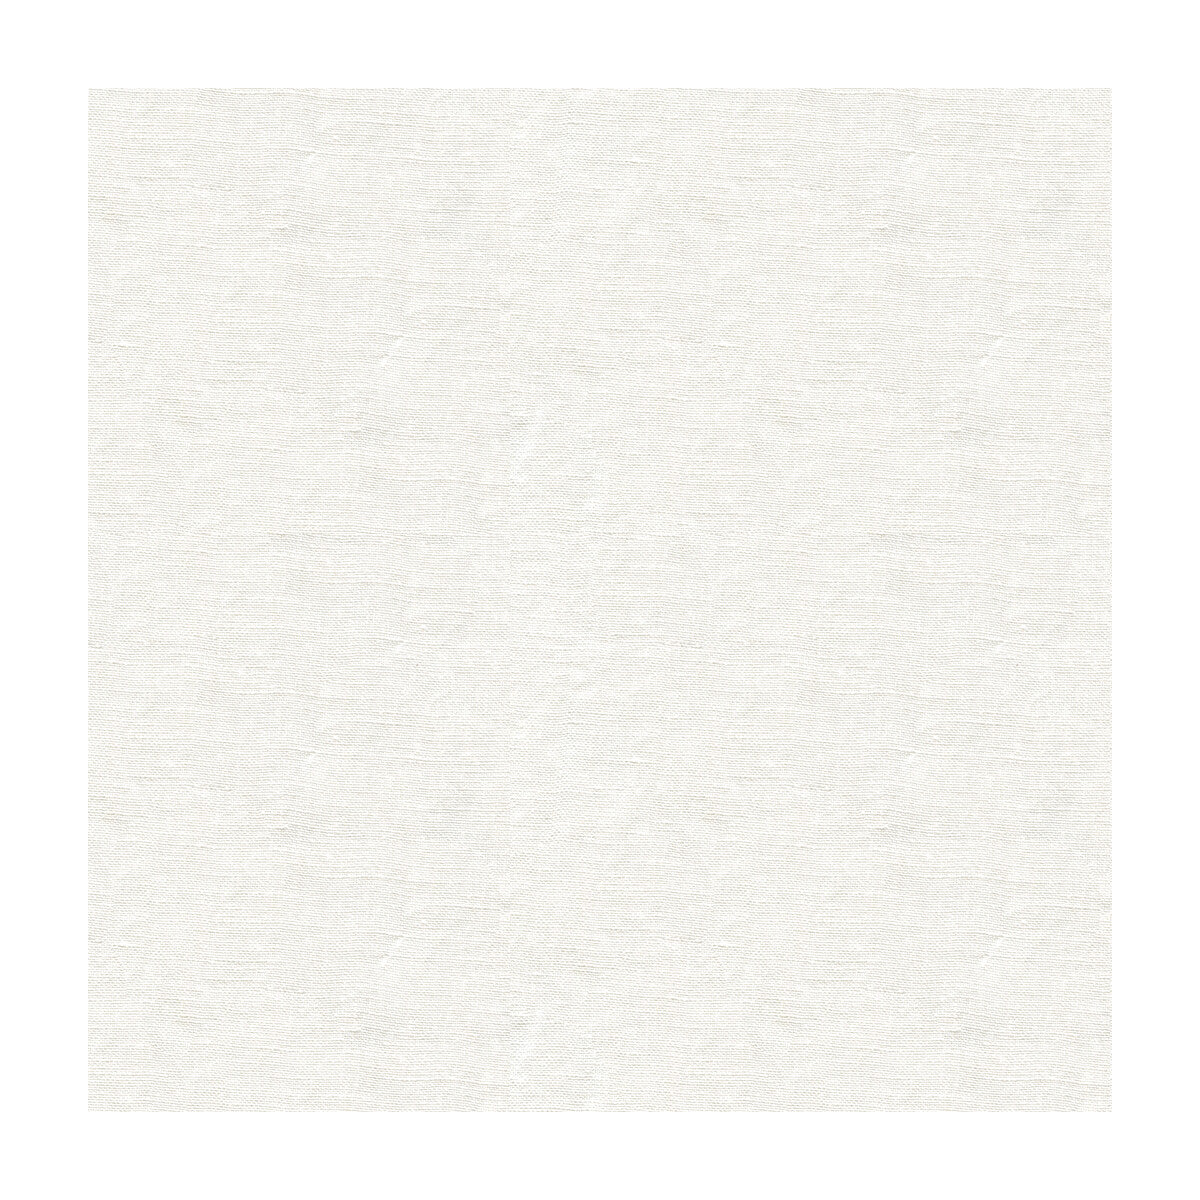 Kravet Basics fabric in 4058-101 color - pattern 4058.101.0 - by Kravet Basics